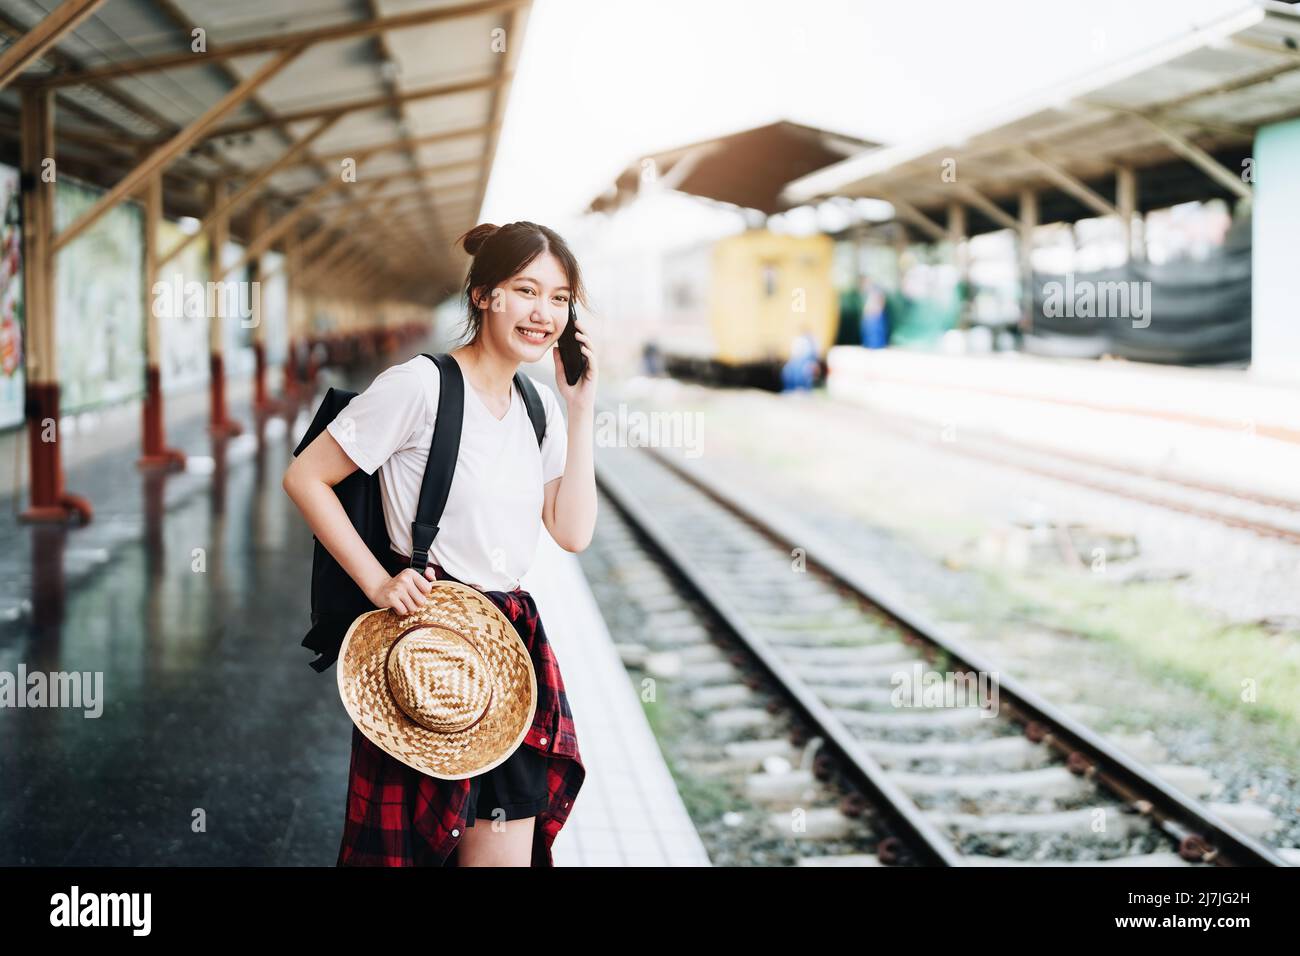 Estate, relax, vacanza, viaggio, ritratto di bella ragazza asiatica utilizzando lo smartphone cellulare per chiamare gli amici alla stazione ferroviaria mentre si aspetta Foto Stock